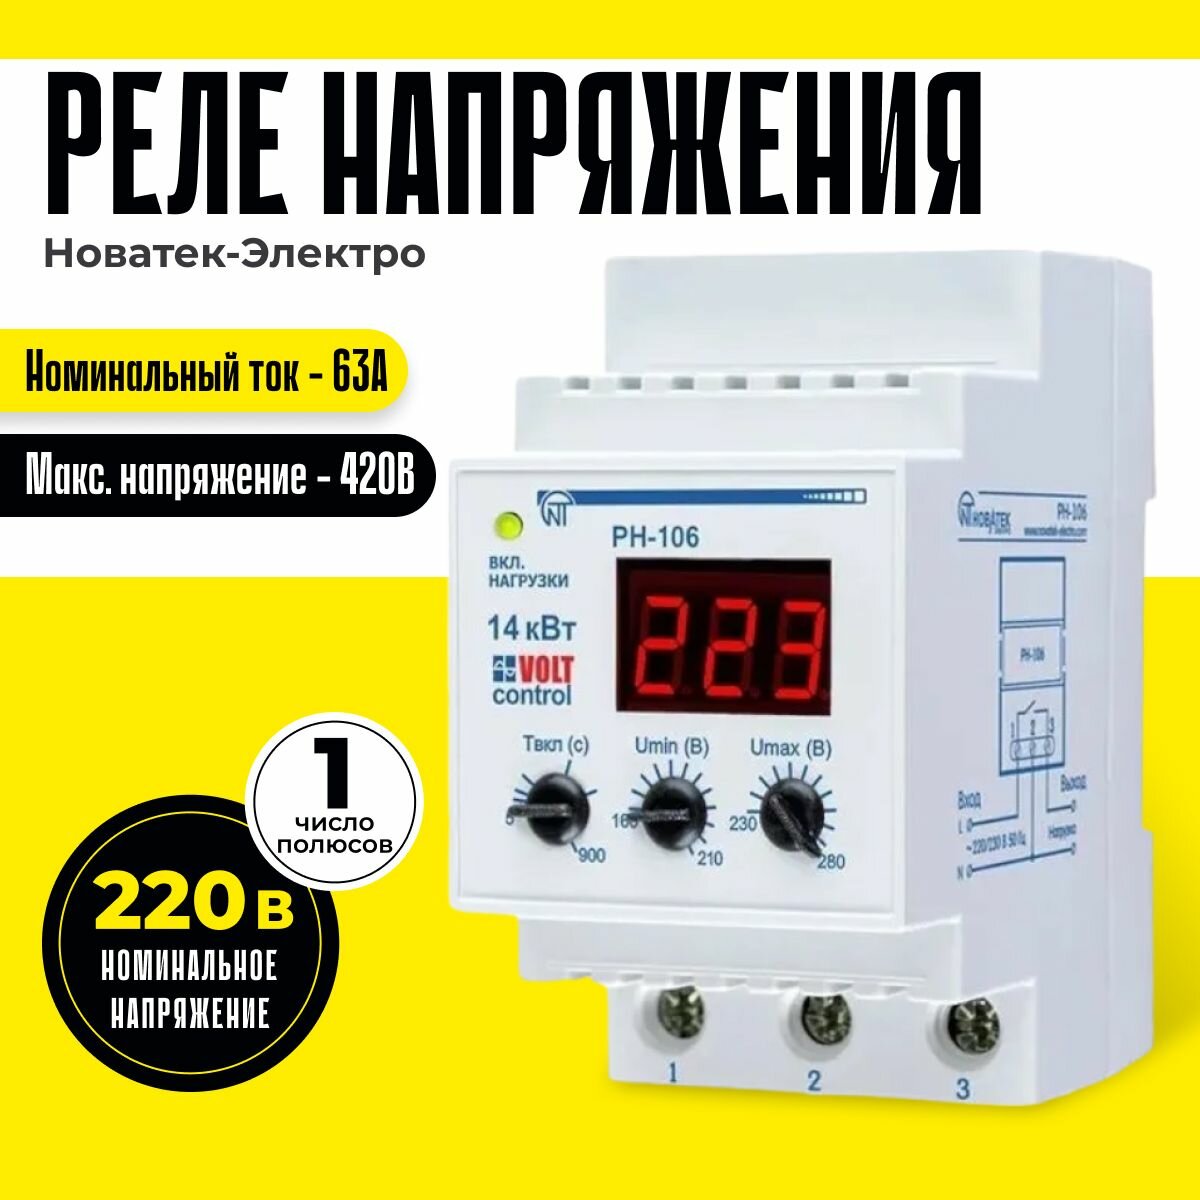 Реле контроля напряжения РН-106 220 В Новатек-Электро однофазное 63А 14 кВт